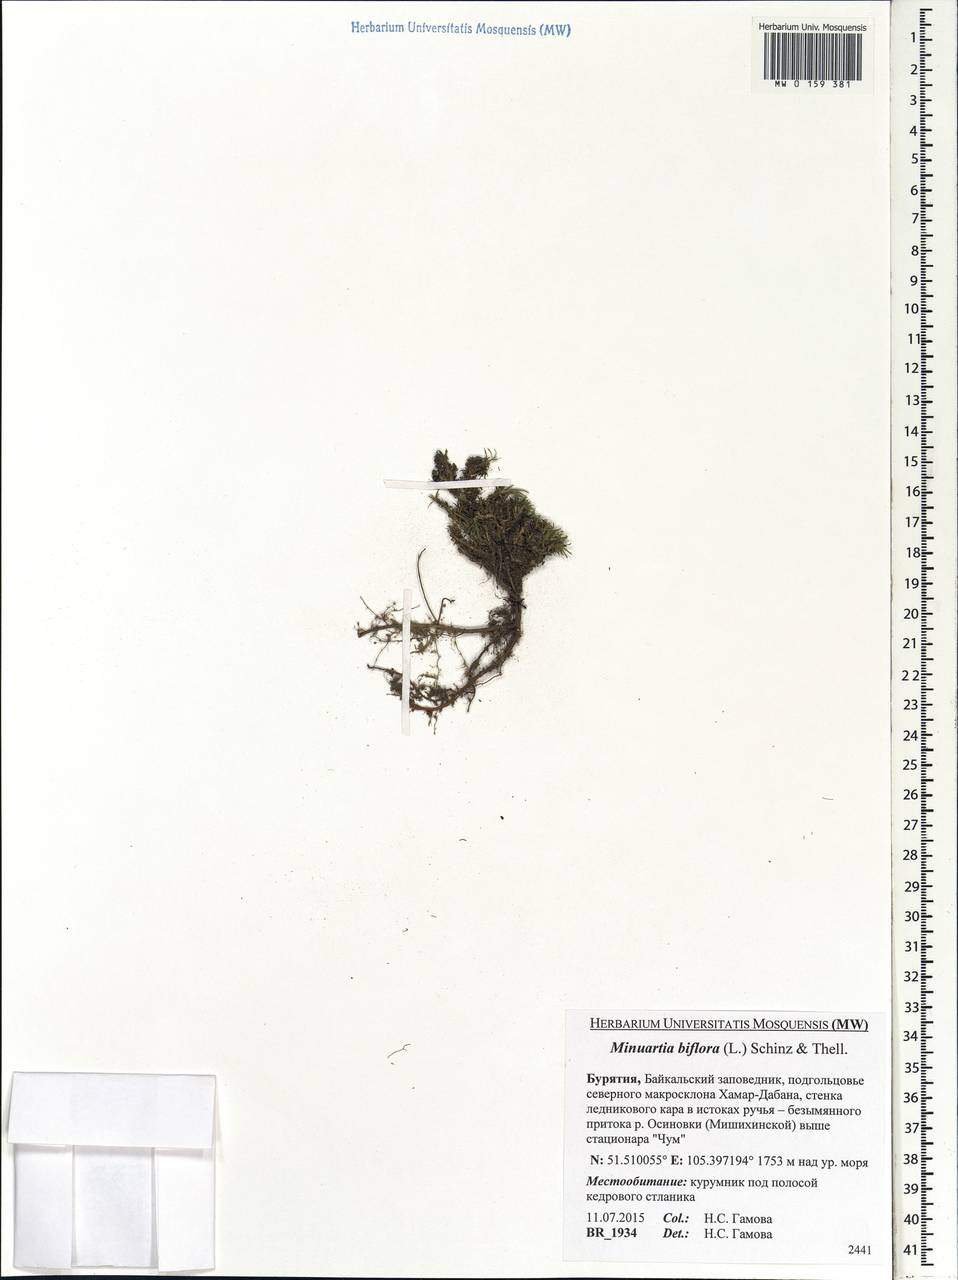 Шерлерия двухцветковая (L.) comb. ined., Сибирь, Прибайкалье и Забайкалье (S4) (Россия)